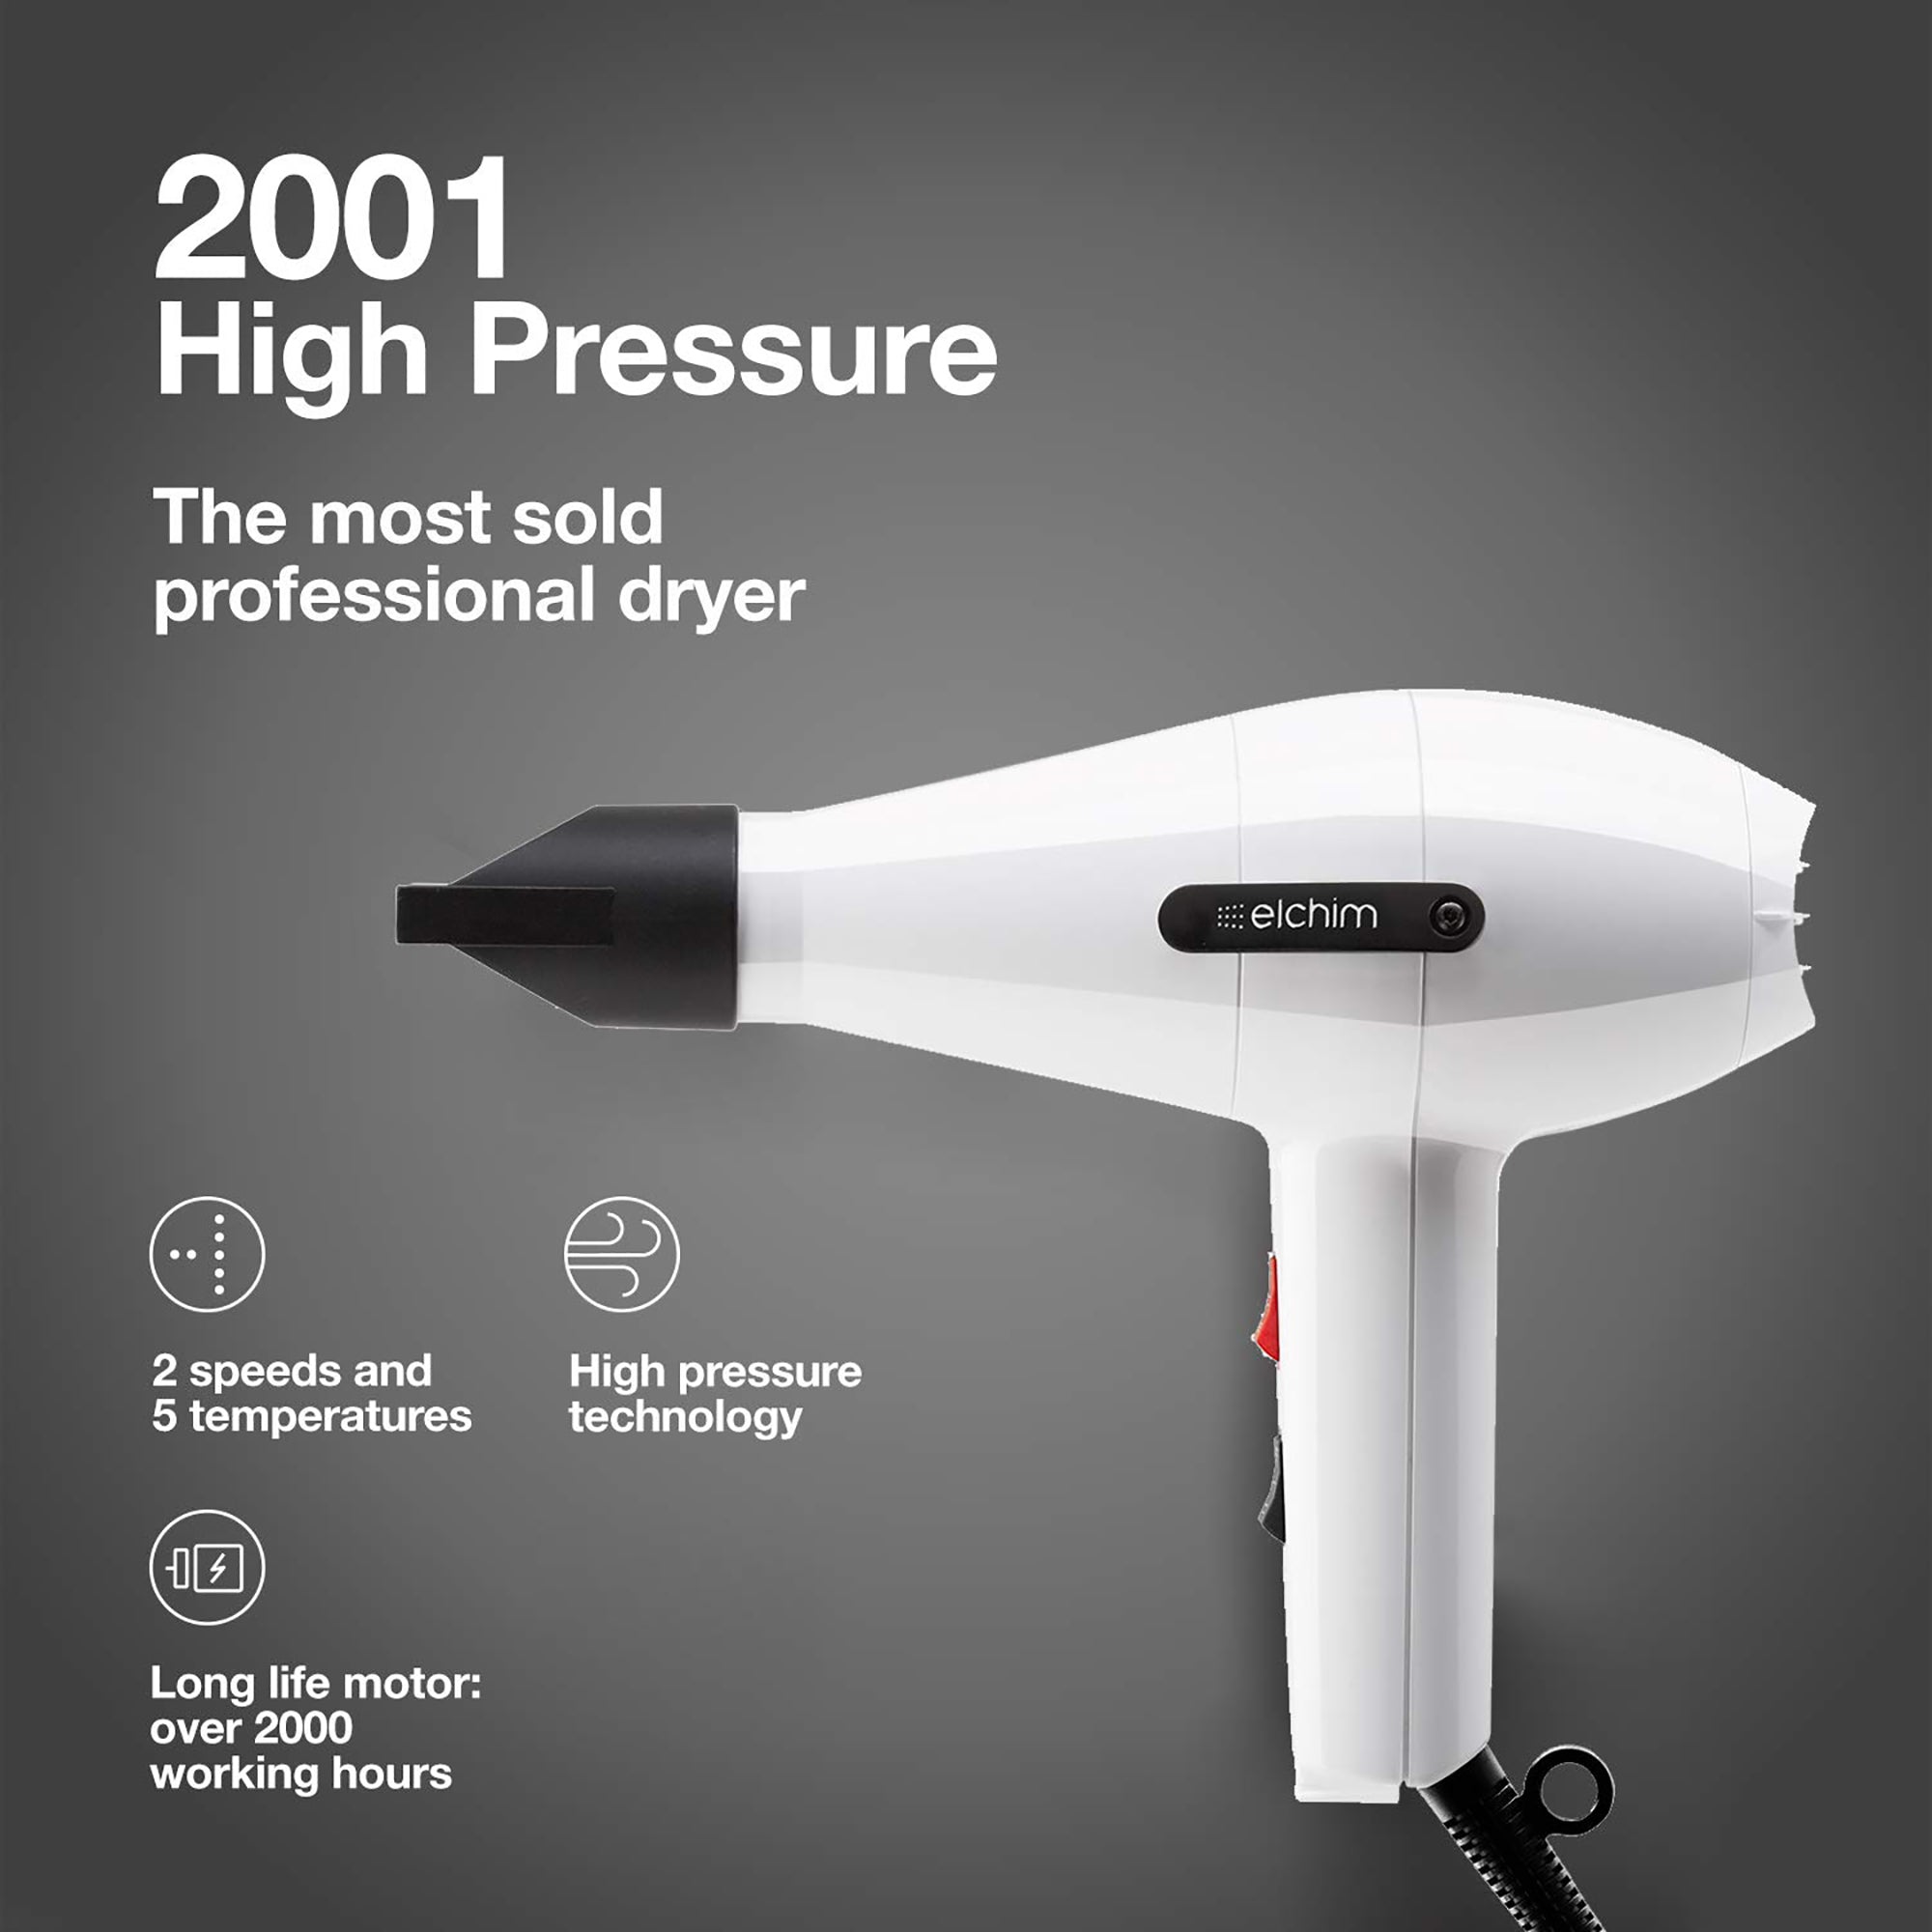 Elchim Dryer 2001 High Pressure White